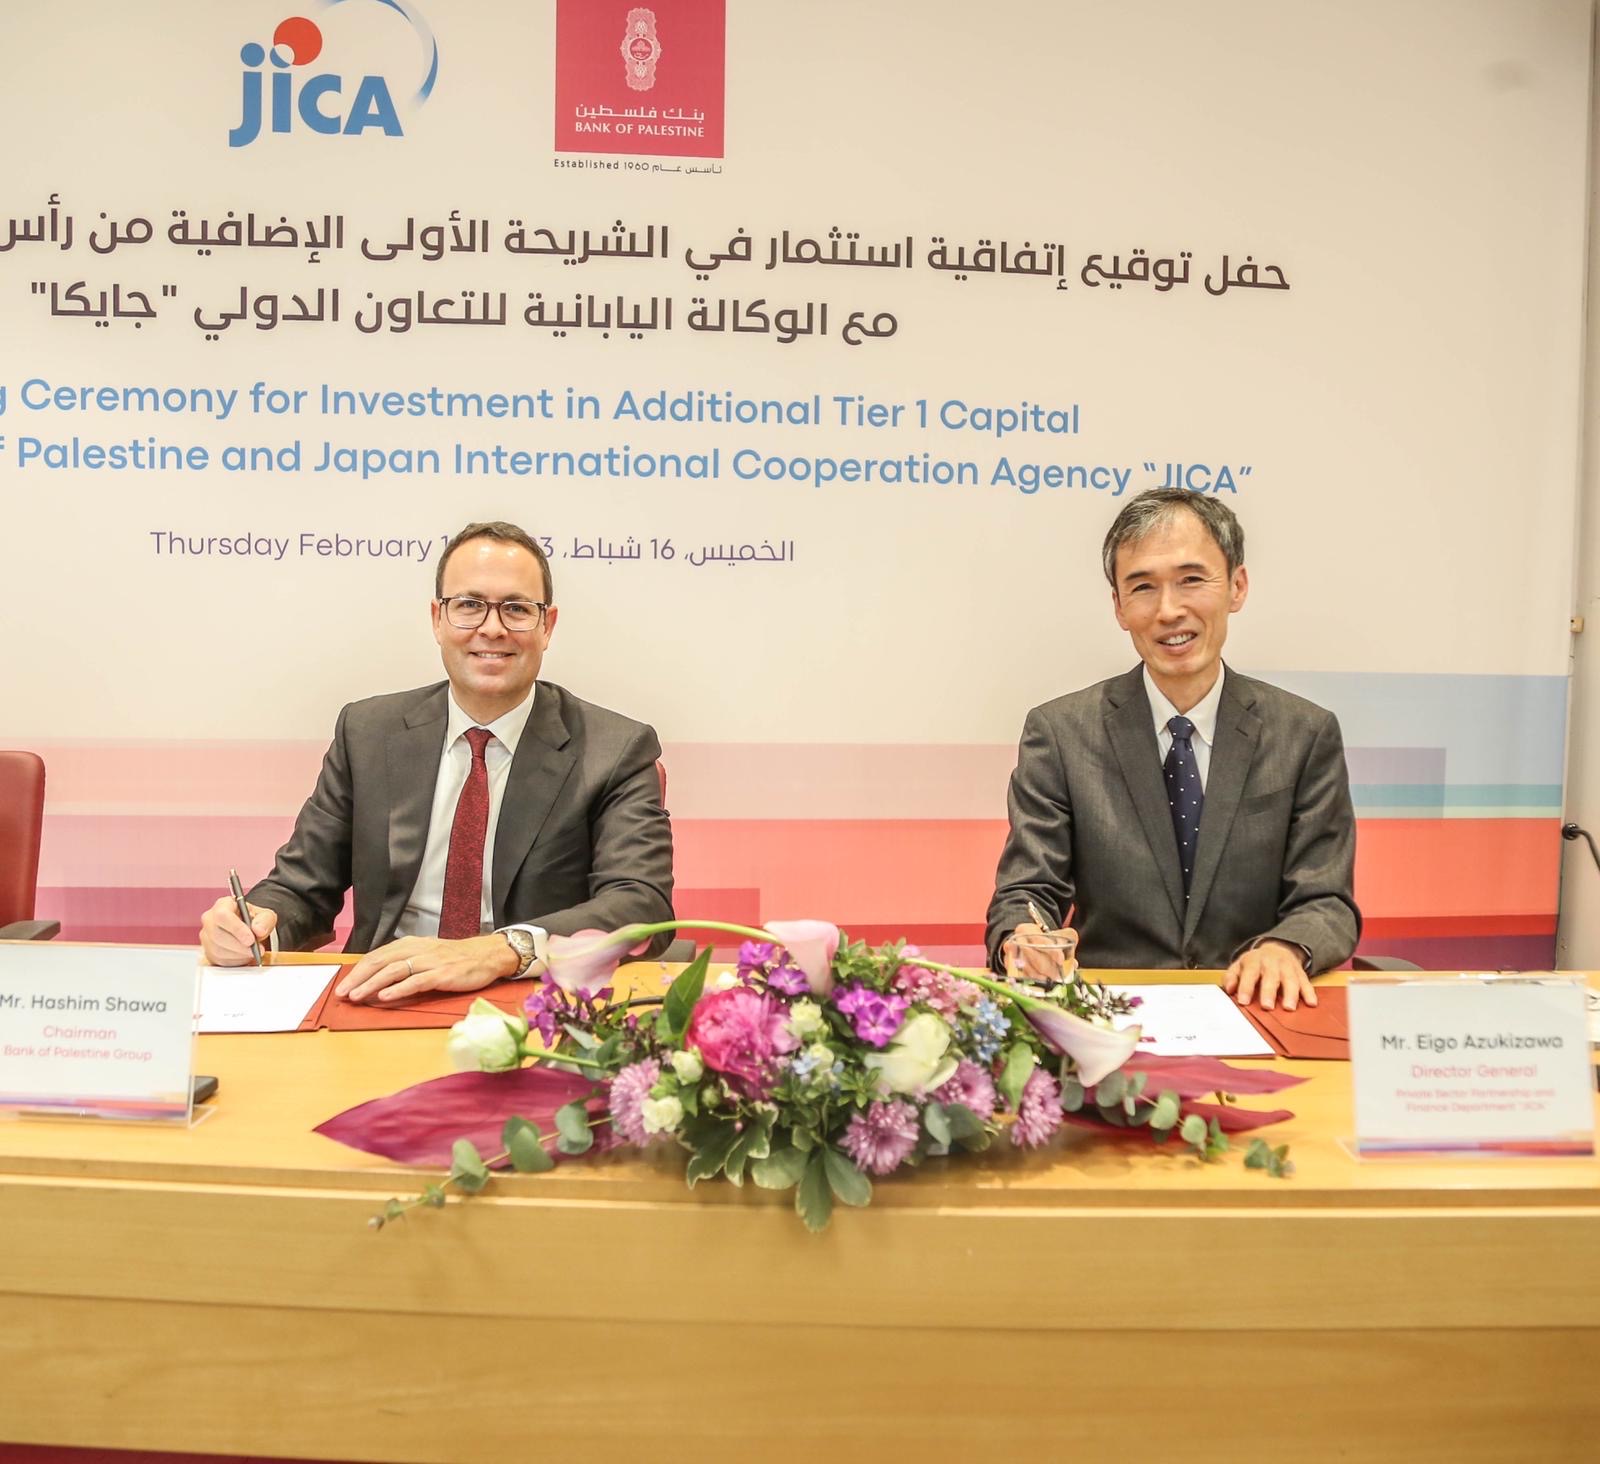 الوكالة اليابانية للتعاون الدولي 《جايكا》 تستثمر 30 مليون دولار أمريكي في الشريحة الأولى الإضافية من رأس مال بنك فلسطين